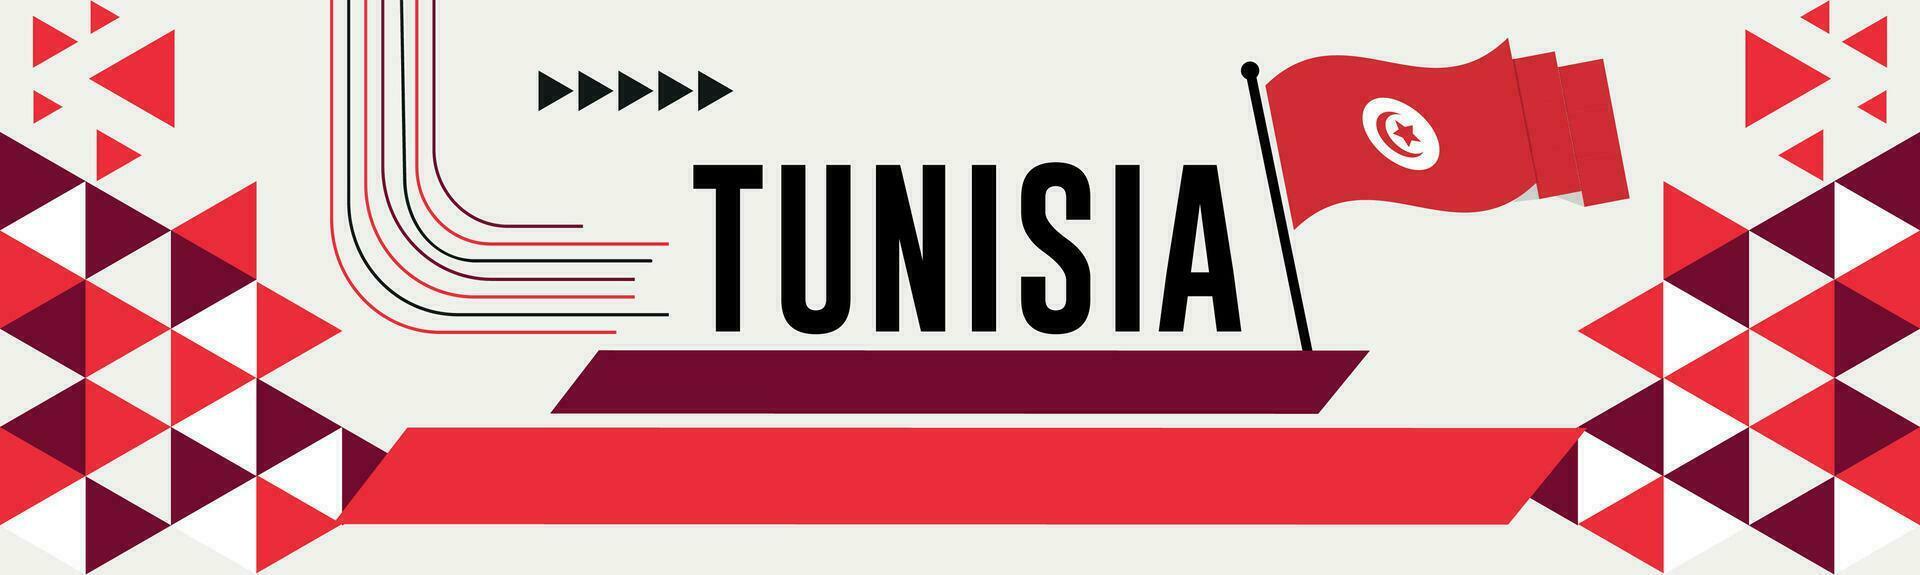 Túnez nacional día bandera con mapa, bandera colores tema antecedentes y geométrico resumen retro moderno colorido diseño con elevado manos o puños vector